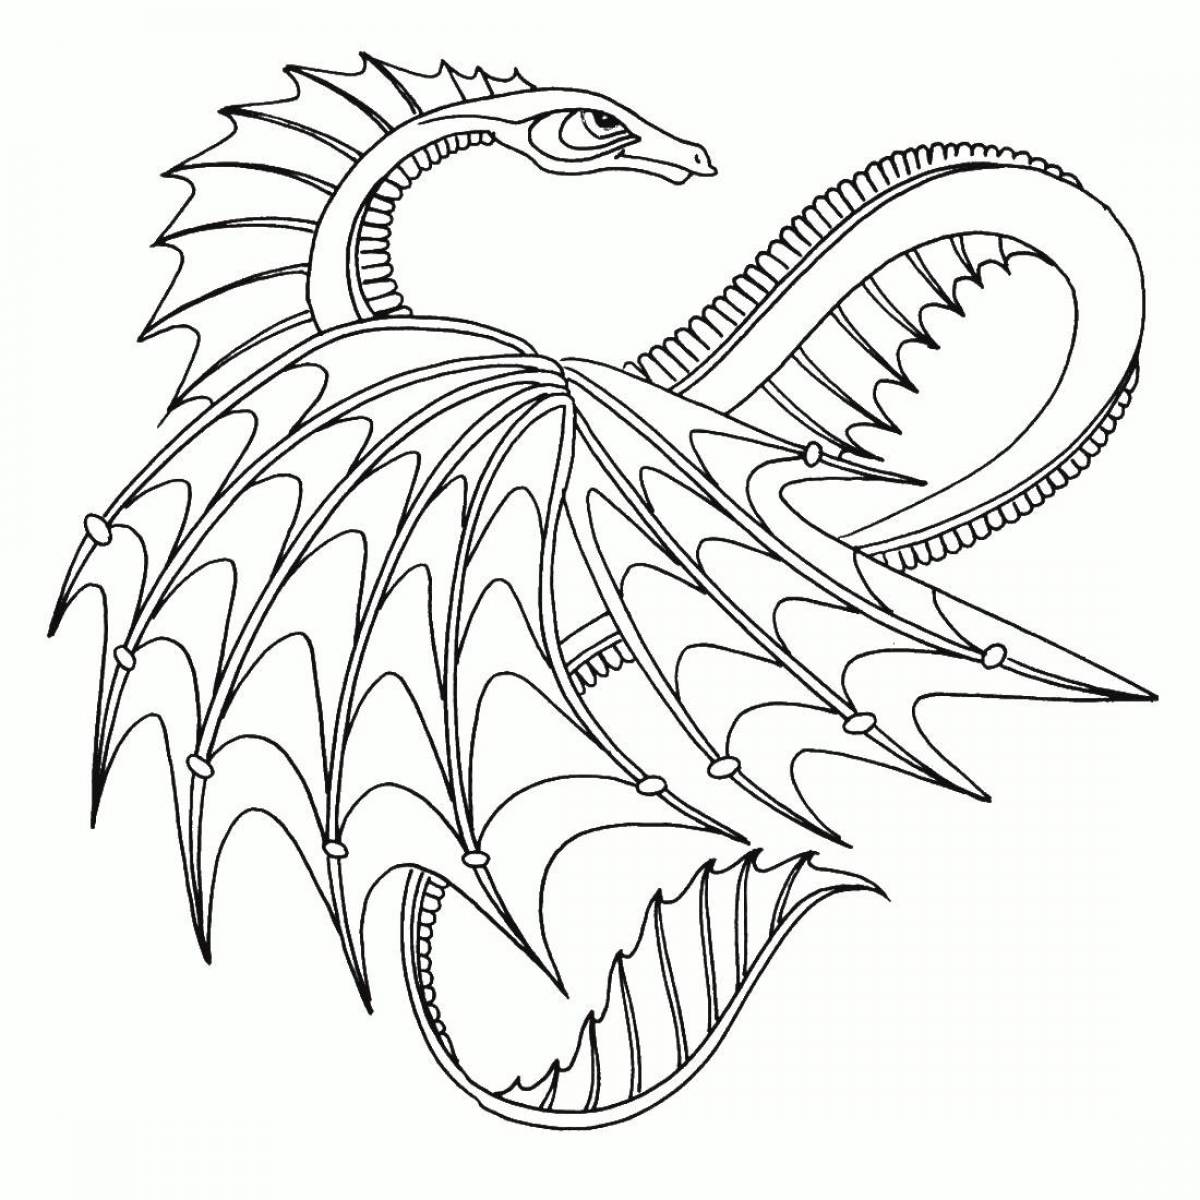 Экзотическая раскраска дракона